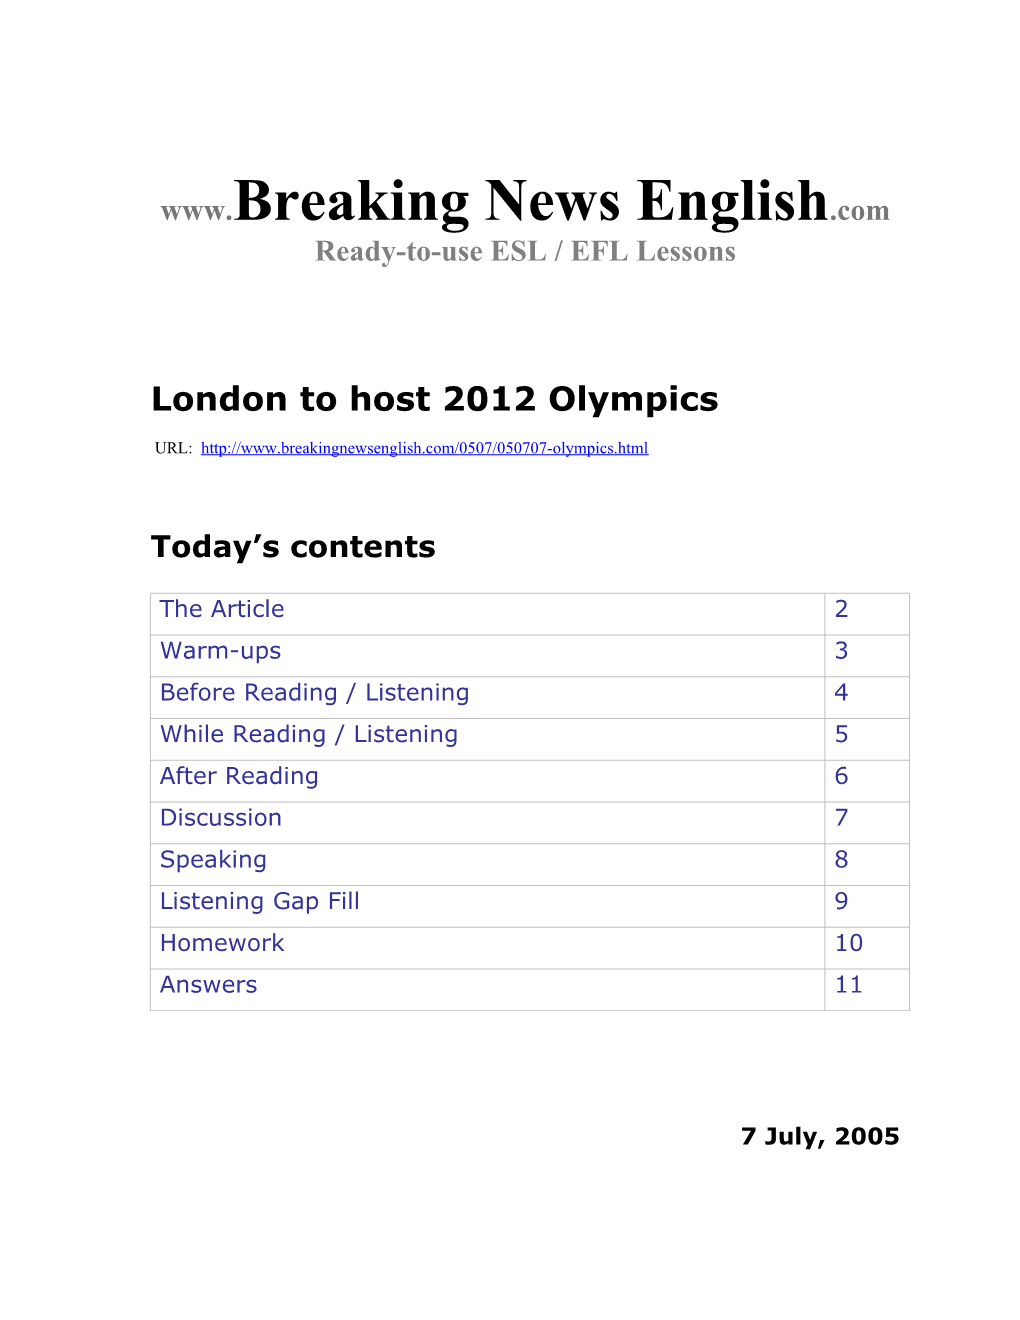 London to Host 2012 Olympics